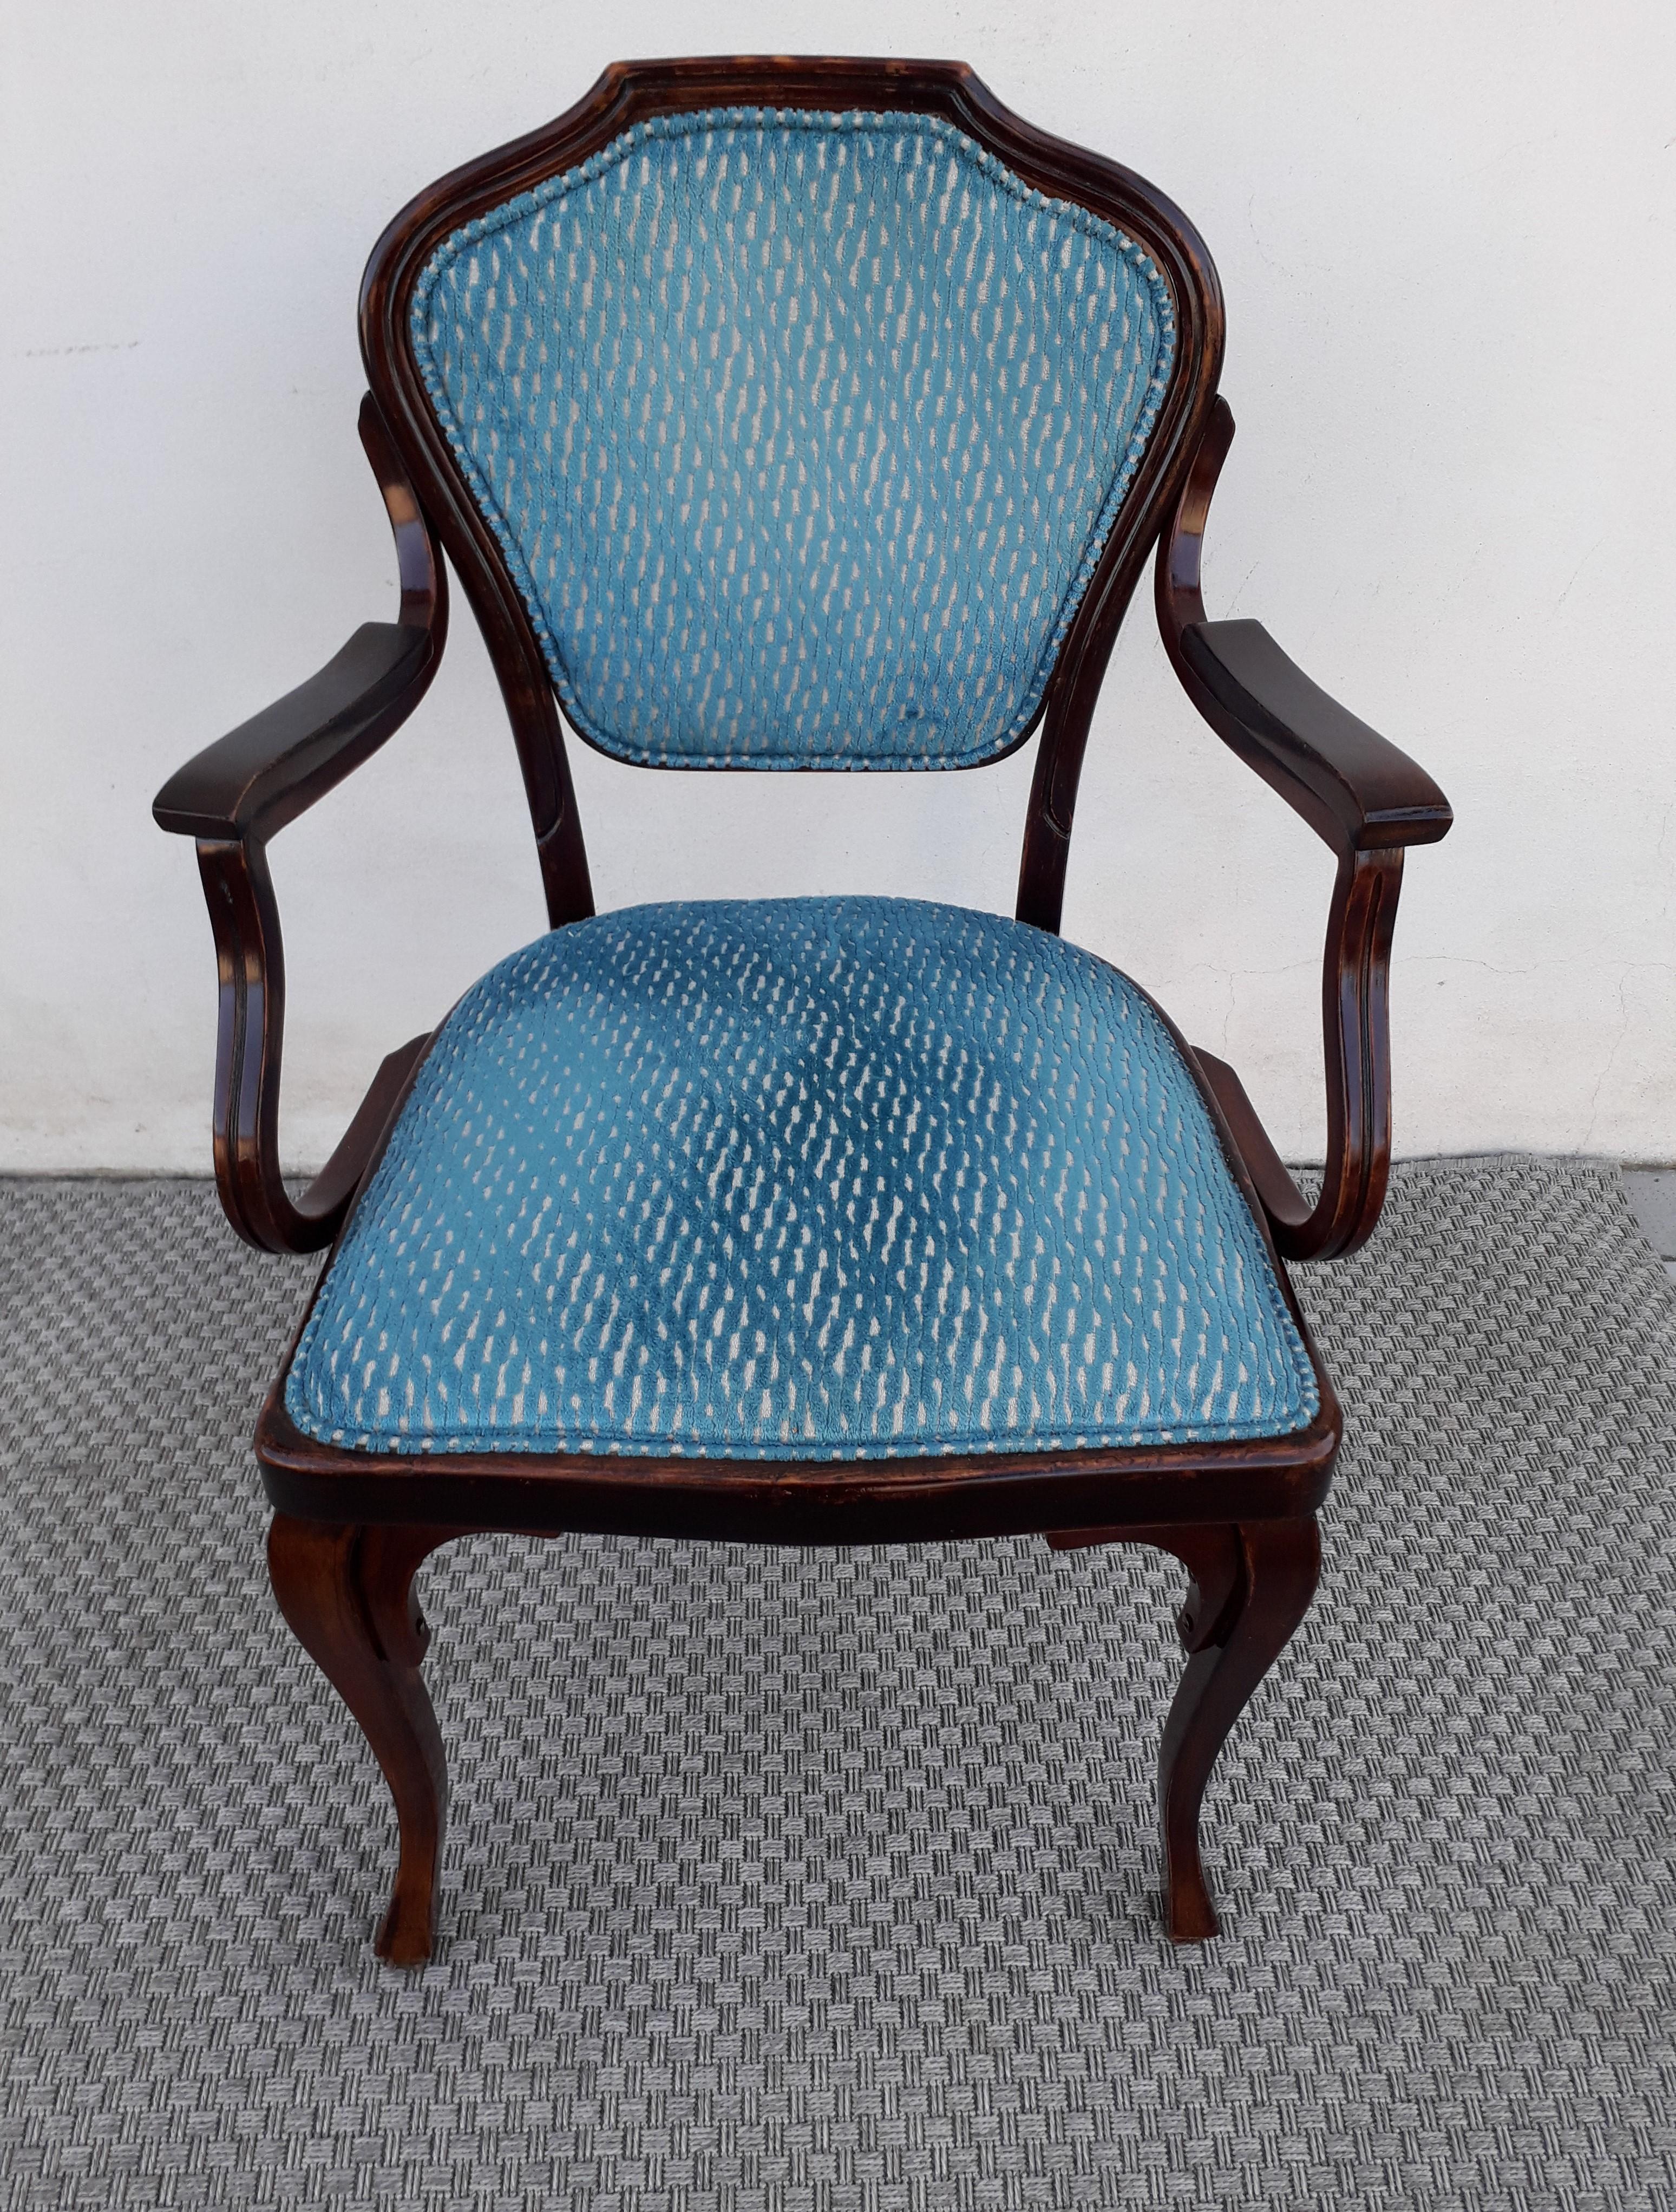 Modèle de fauteuil N° 303 conçu par l'architecte viennois Gustav Siegel et fabriqué par Jacop & Josef Kohn en première patine.
Tissu velouté et padding en bon état.
Fauteuil robuste et super léger, en plus d'être un modèle rare.